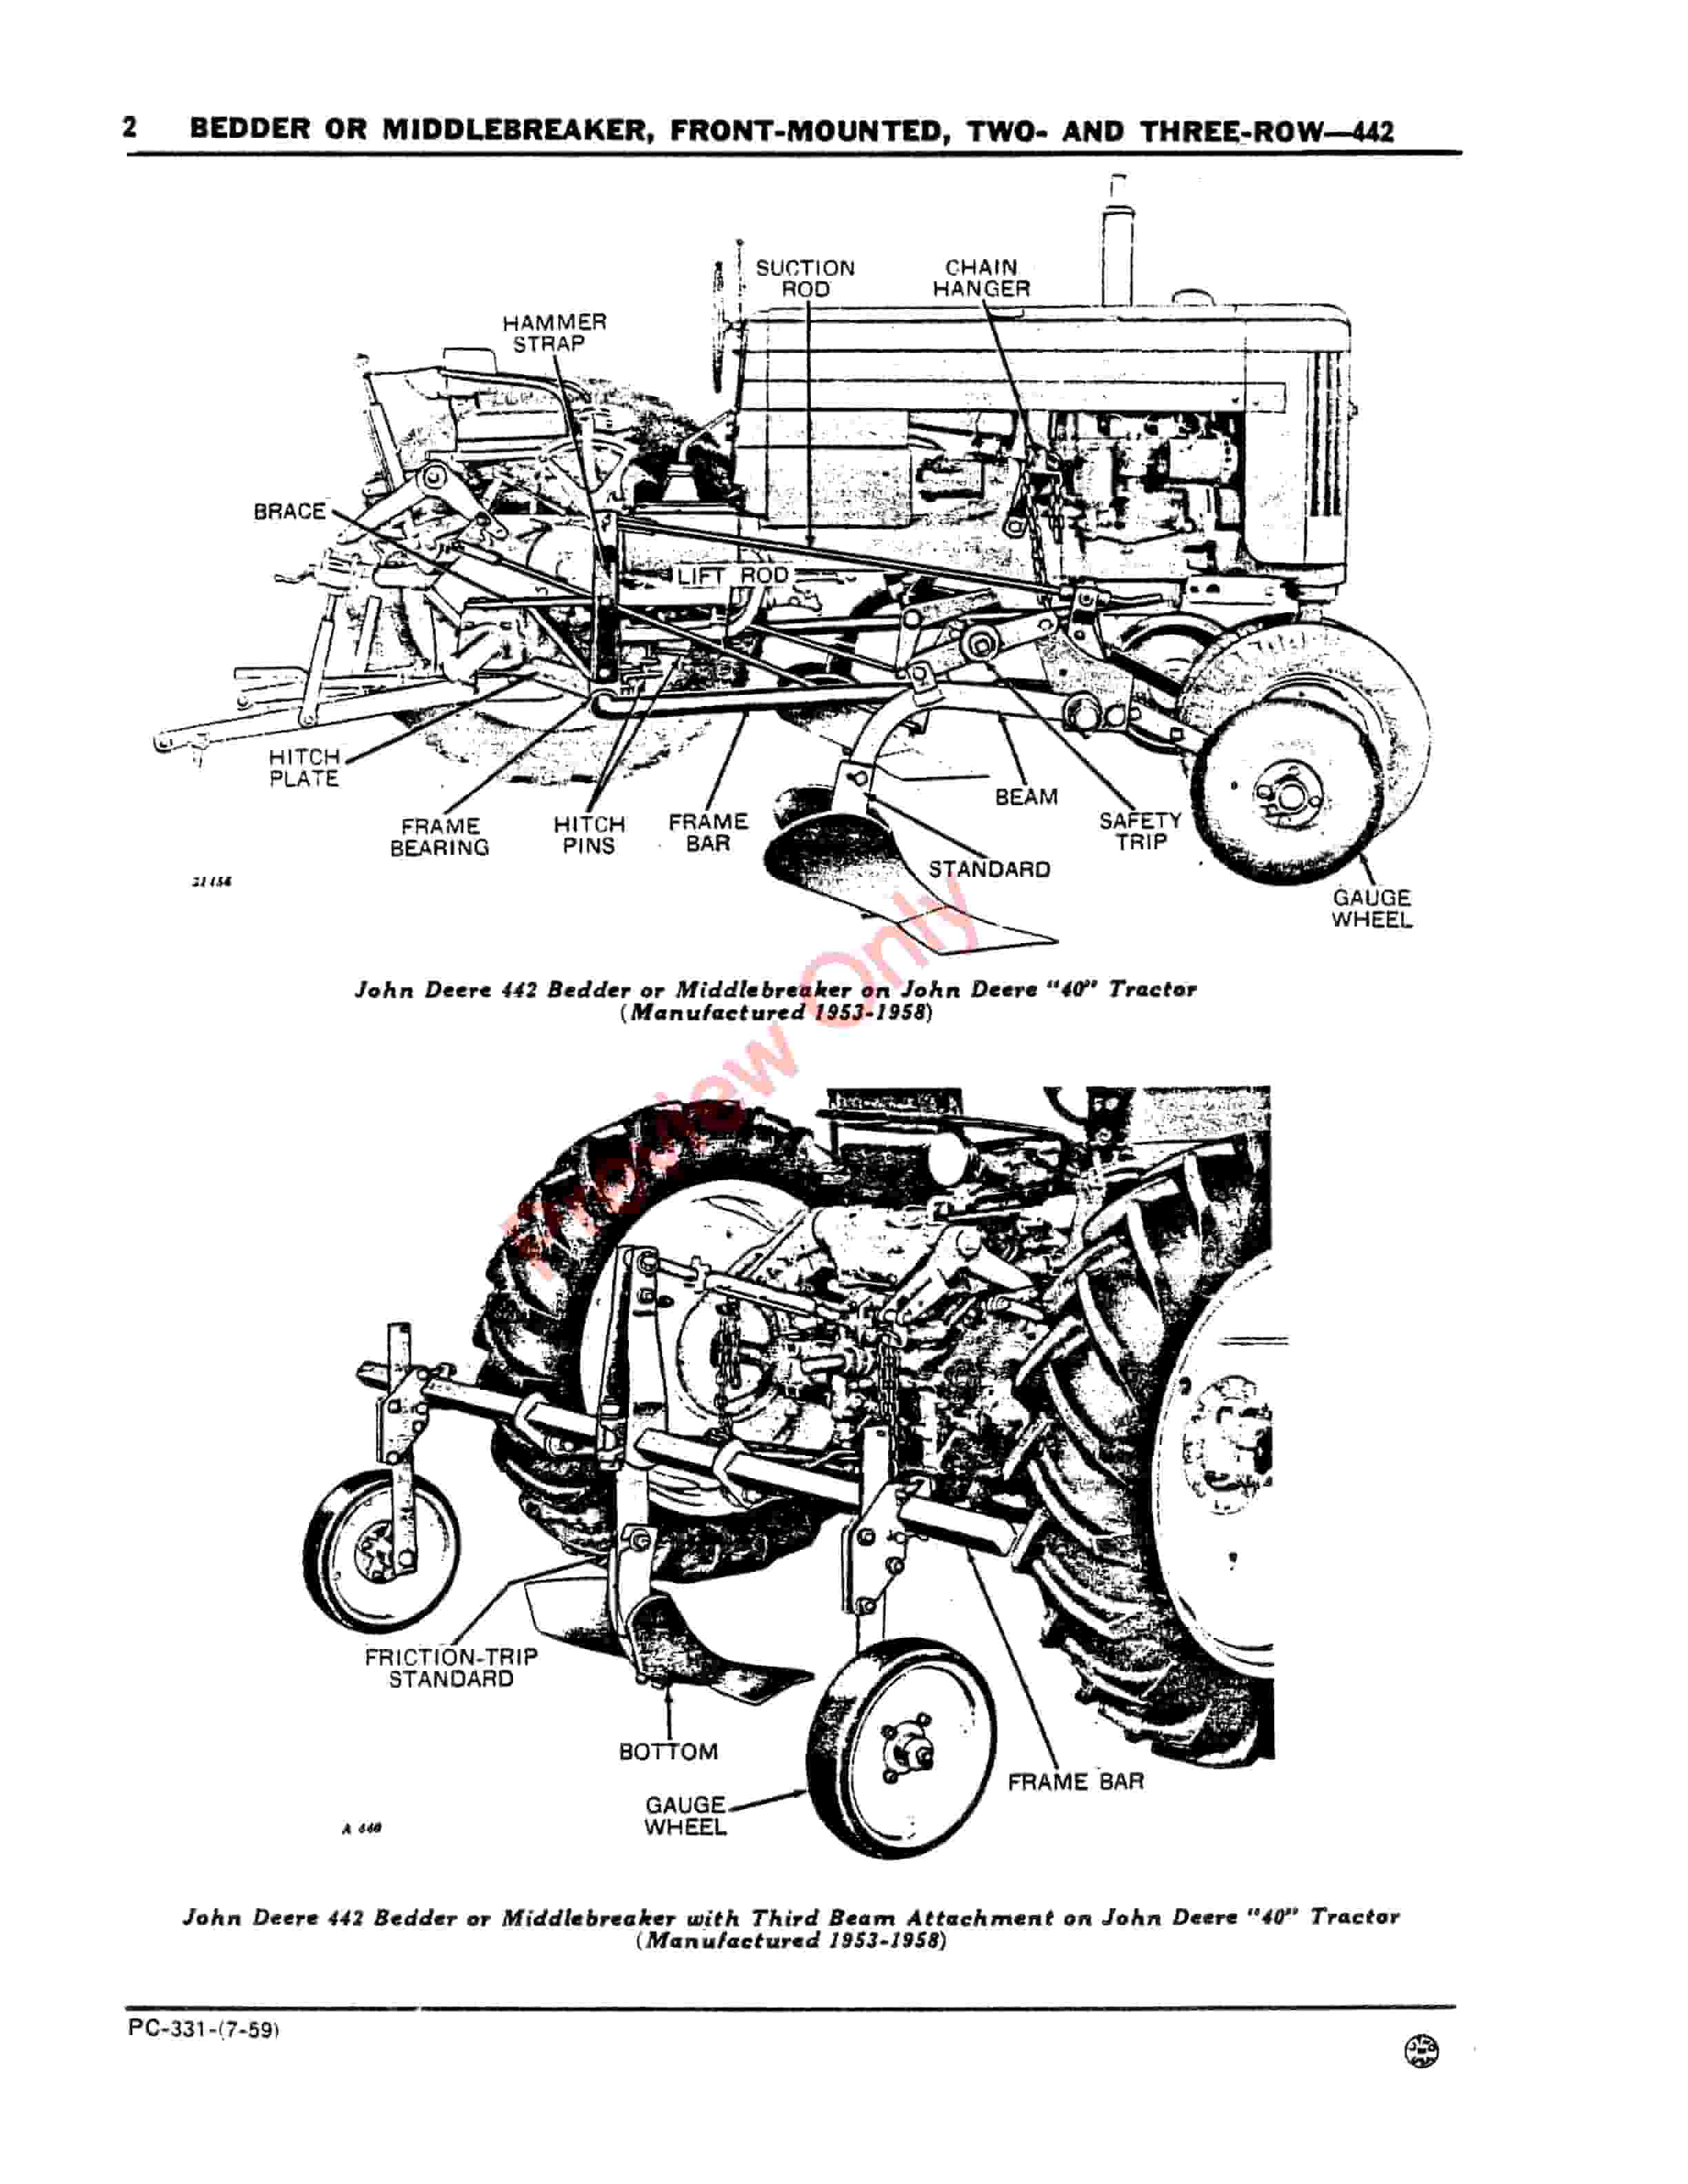 John Deere Front-Mounted Bedder or Middlebreaker – 442 Parts Catalog PC331 01JUL59-4